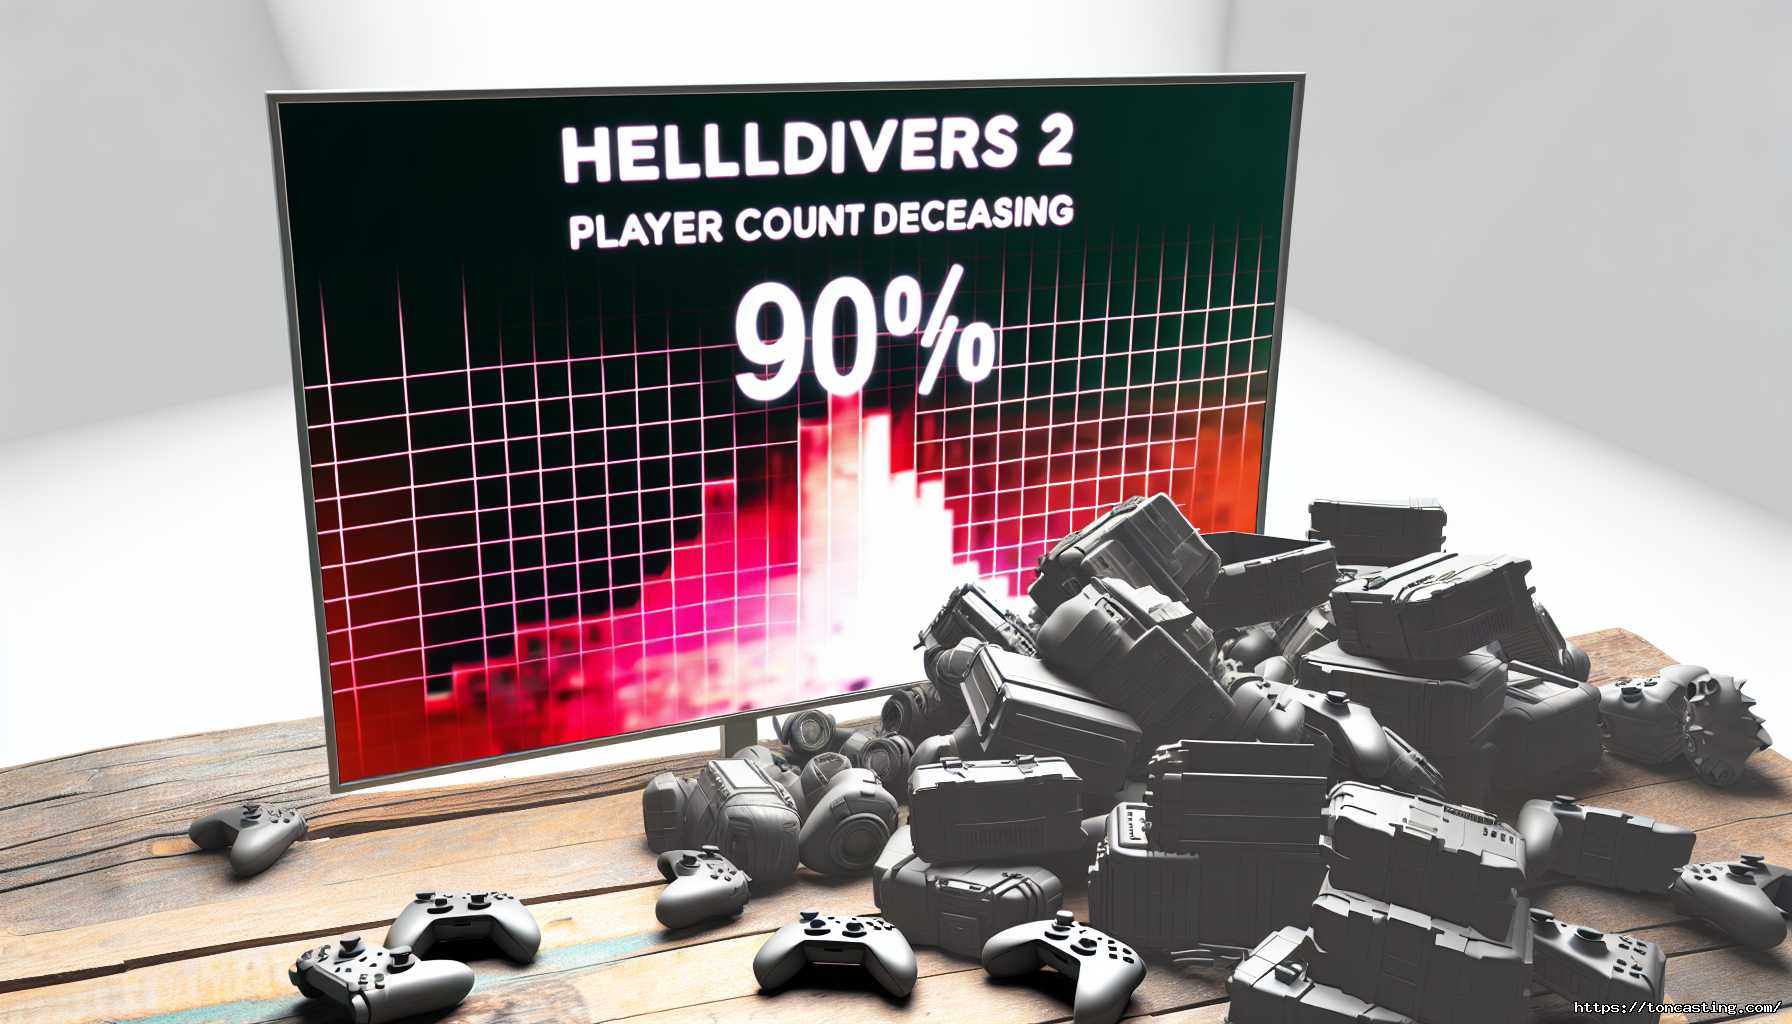 Chute Abrupte : Helldivers 2 Perd 90% de Ses Joueurs sur PS5 et PC